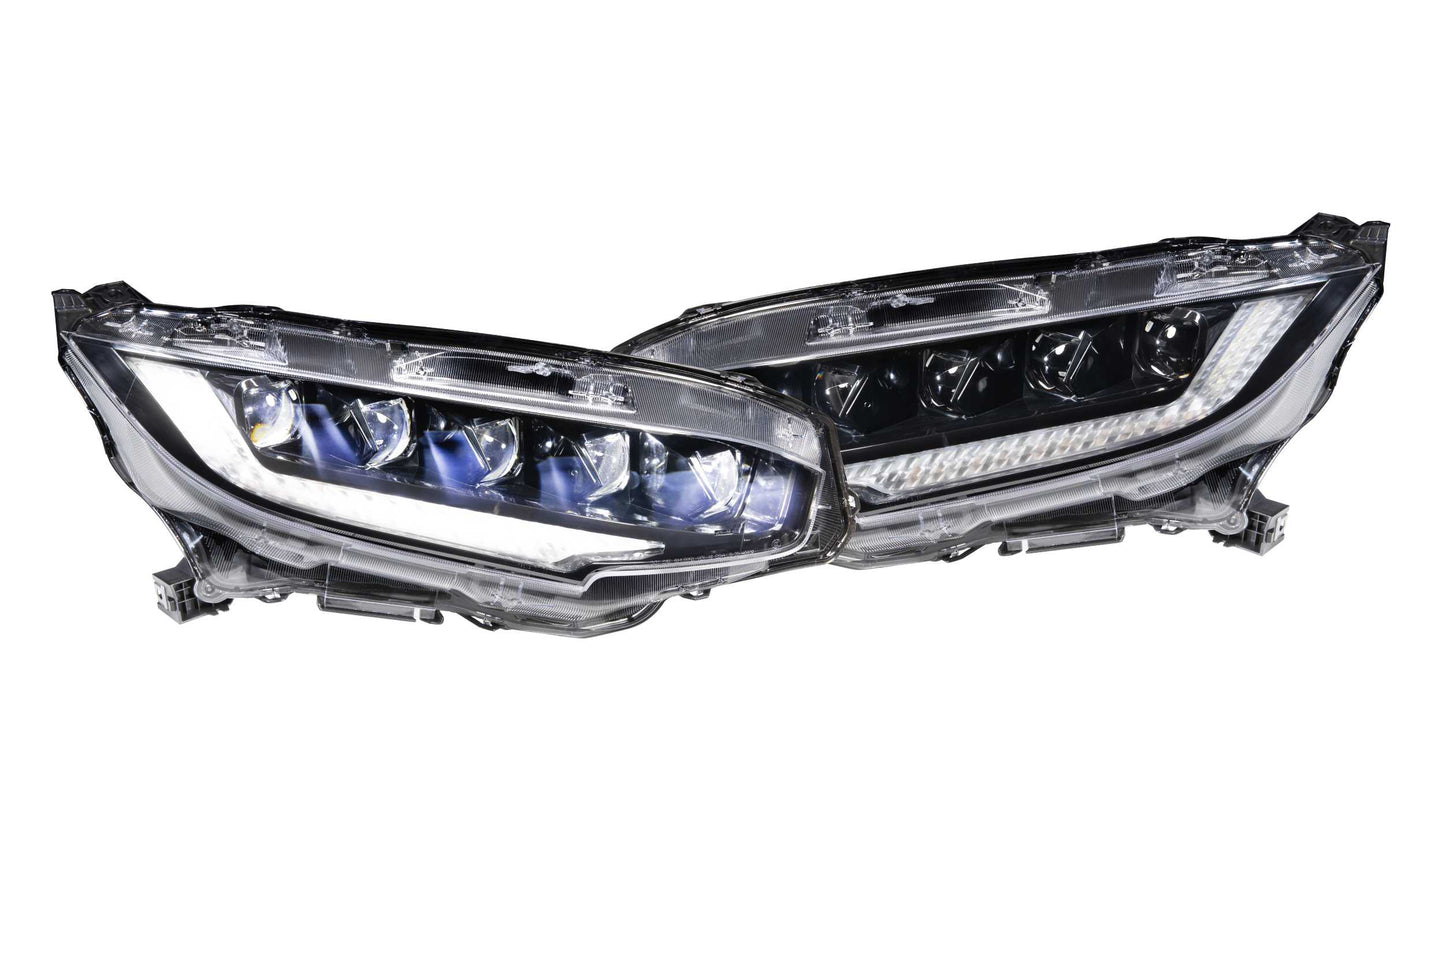 XB LED Headlights: Honda Civic (16-20) (Pair)